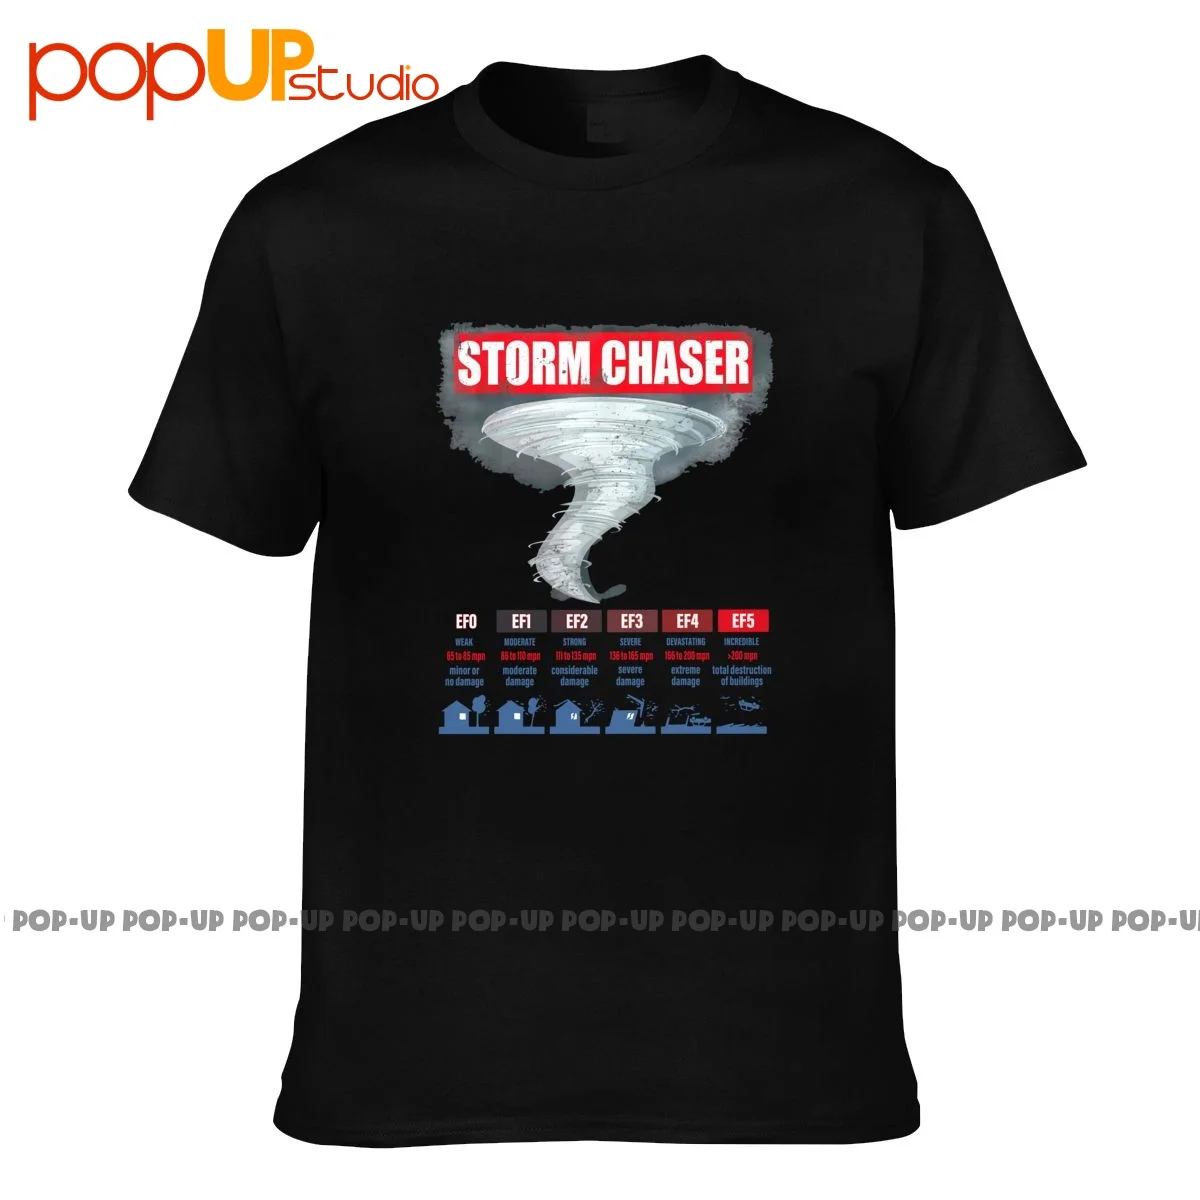 Футболка Storm Chaser Efo Ef1 Ef2 Ef3 Ef4 Ef5, крутая повседневная футболка премиум-класса Лучшего качества